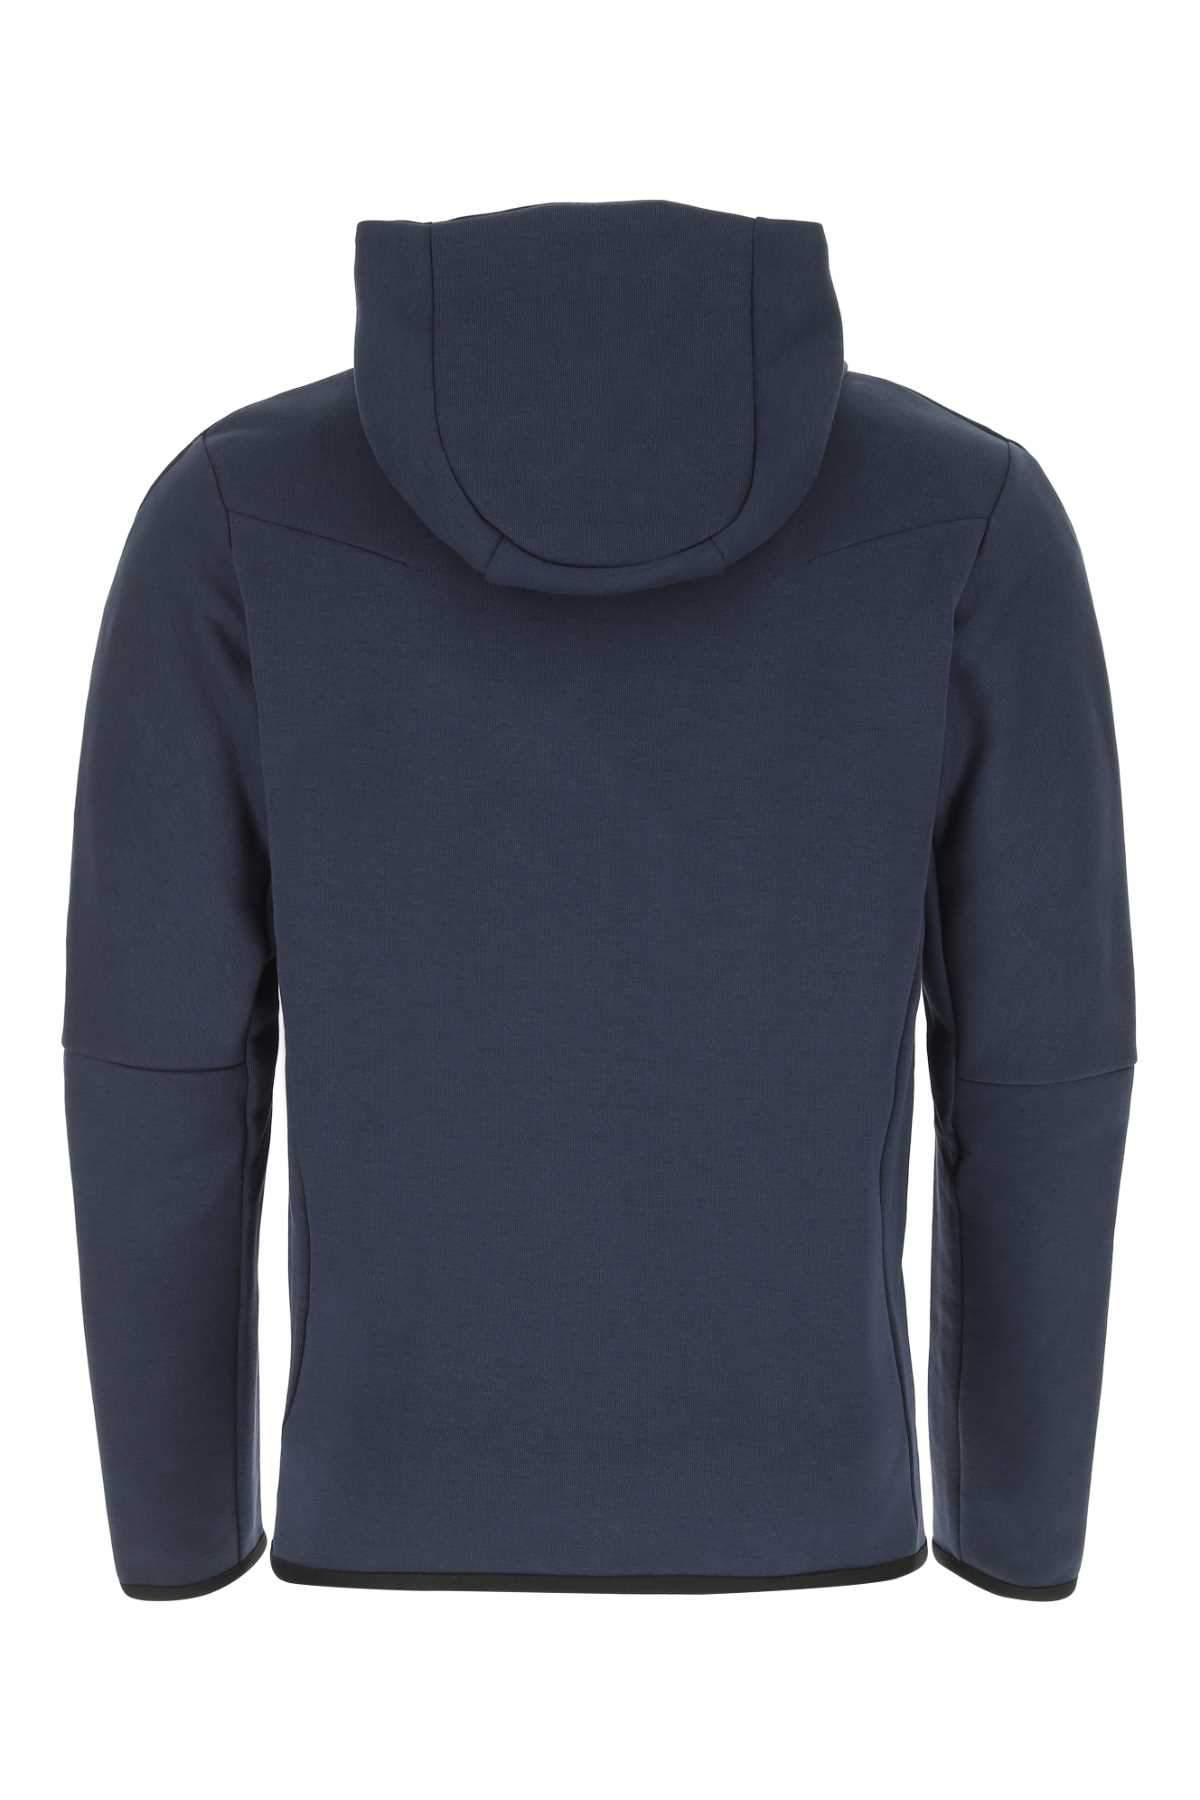 Nike Tech Fleece Full-zip Jacket in Navy (Blue) | Lyst